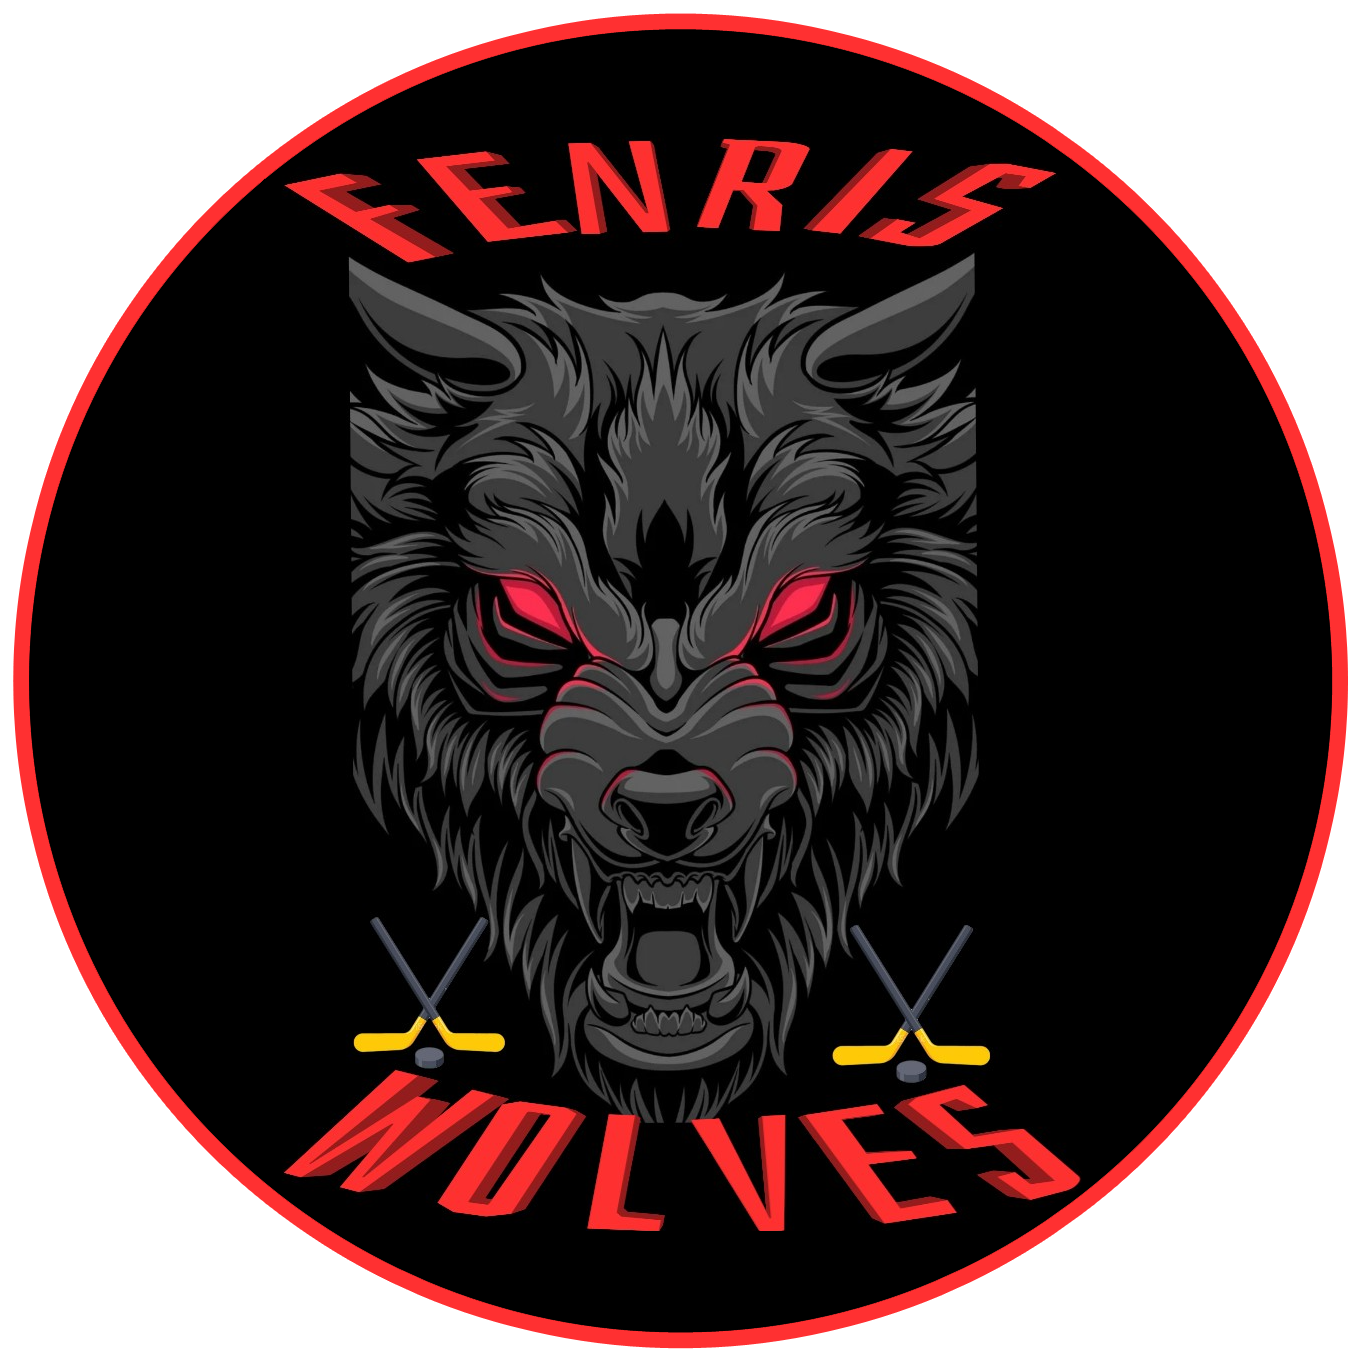 Fenris Wolves